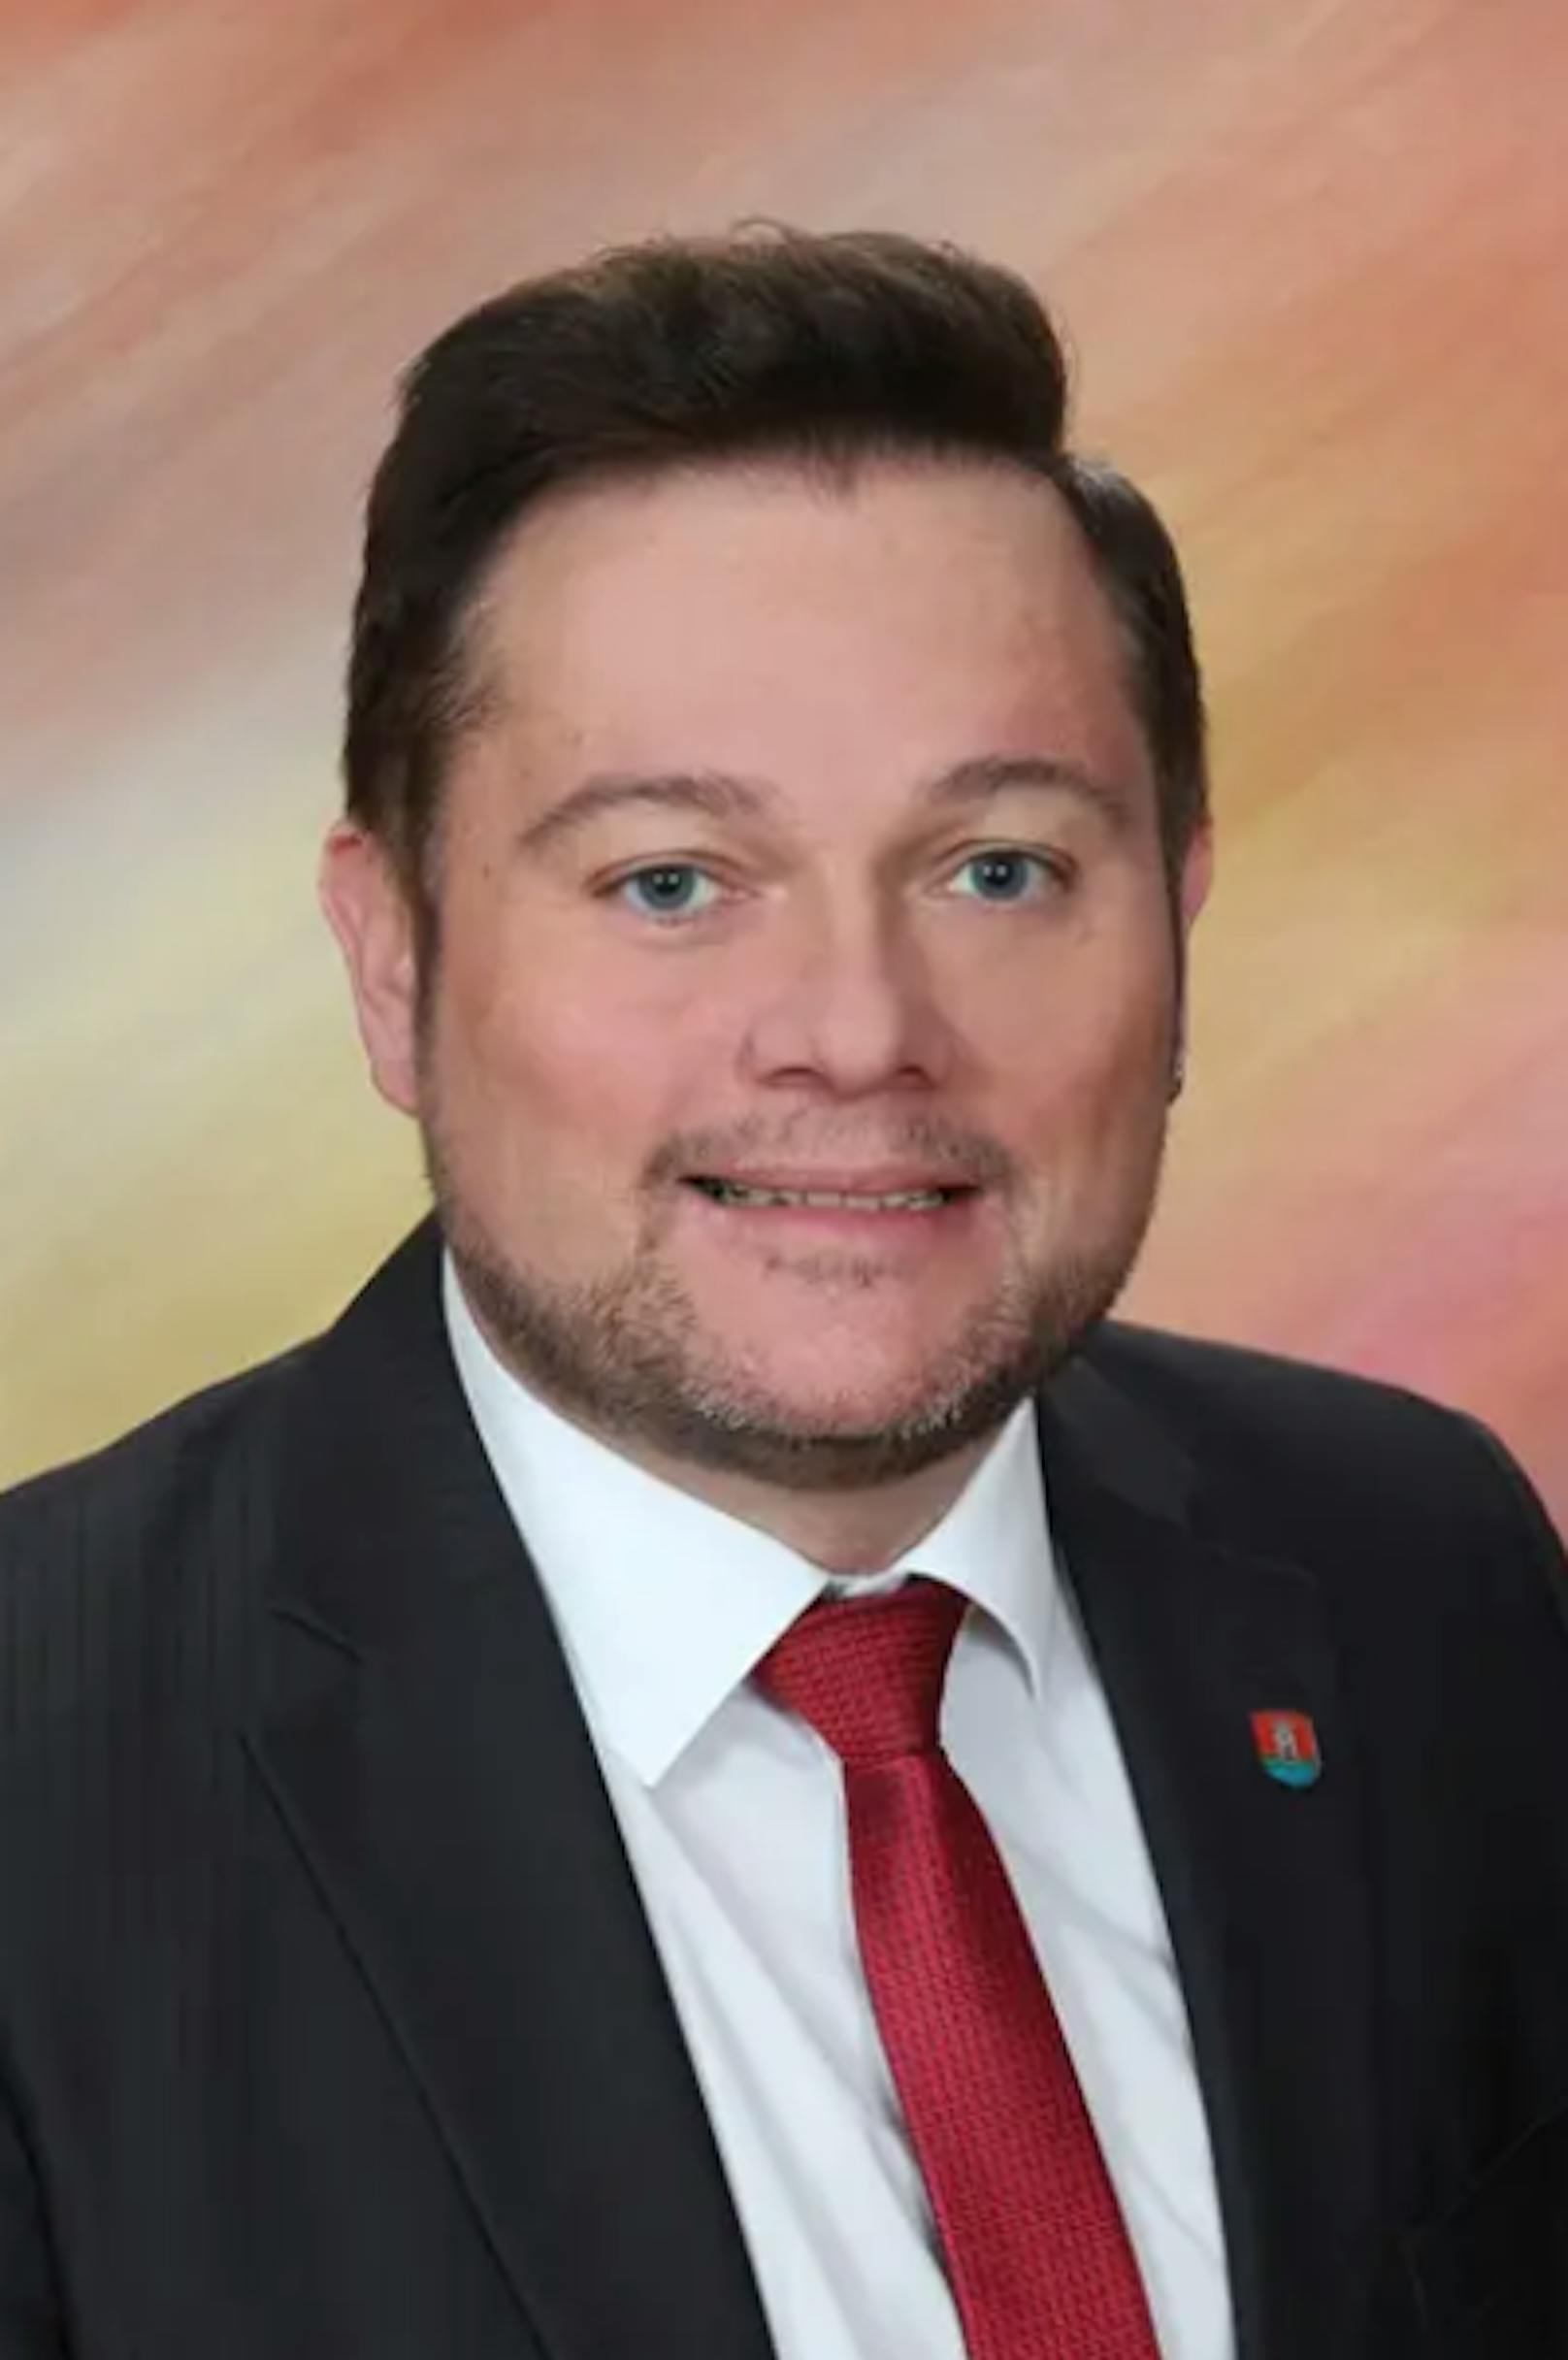 Traismauers Bürgermeister Herbert Pfeffer kontert der ÖVP.